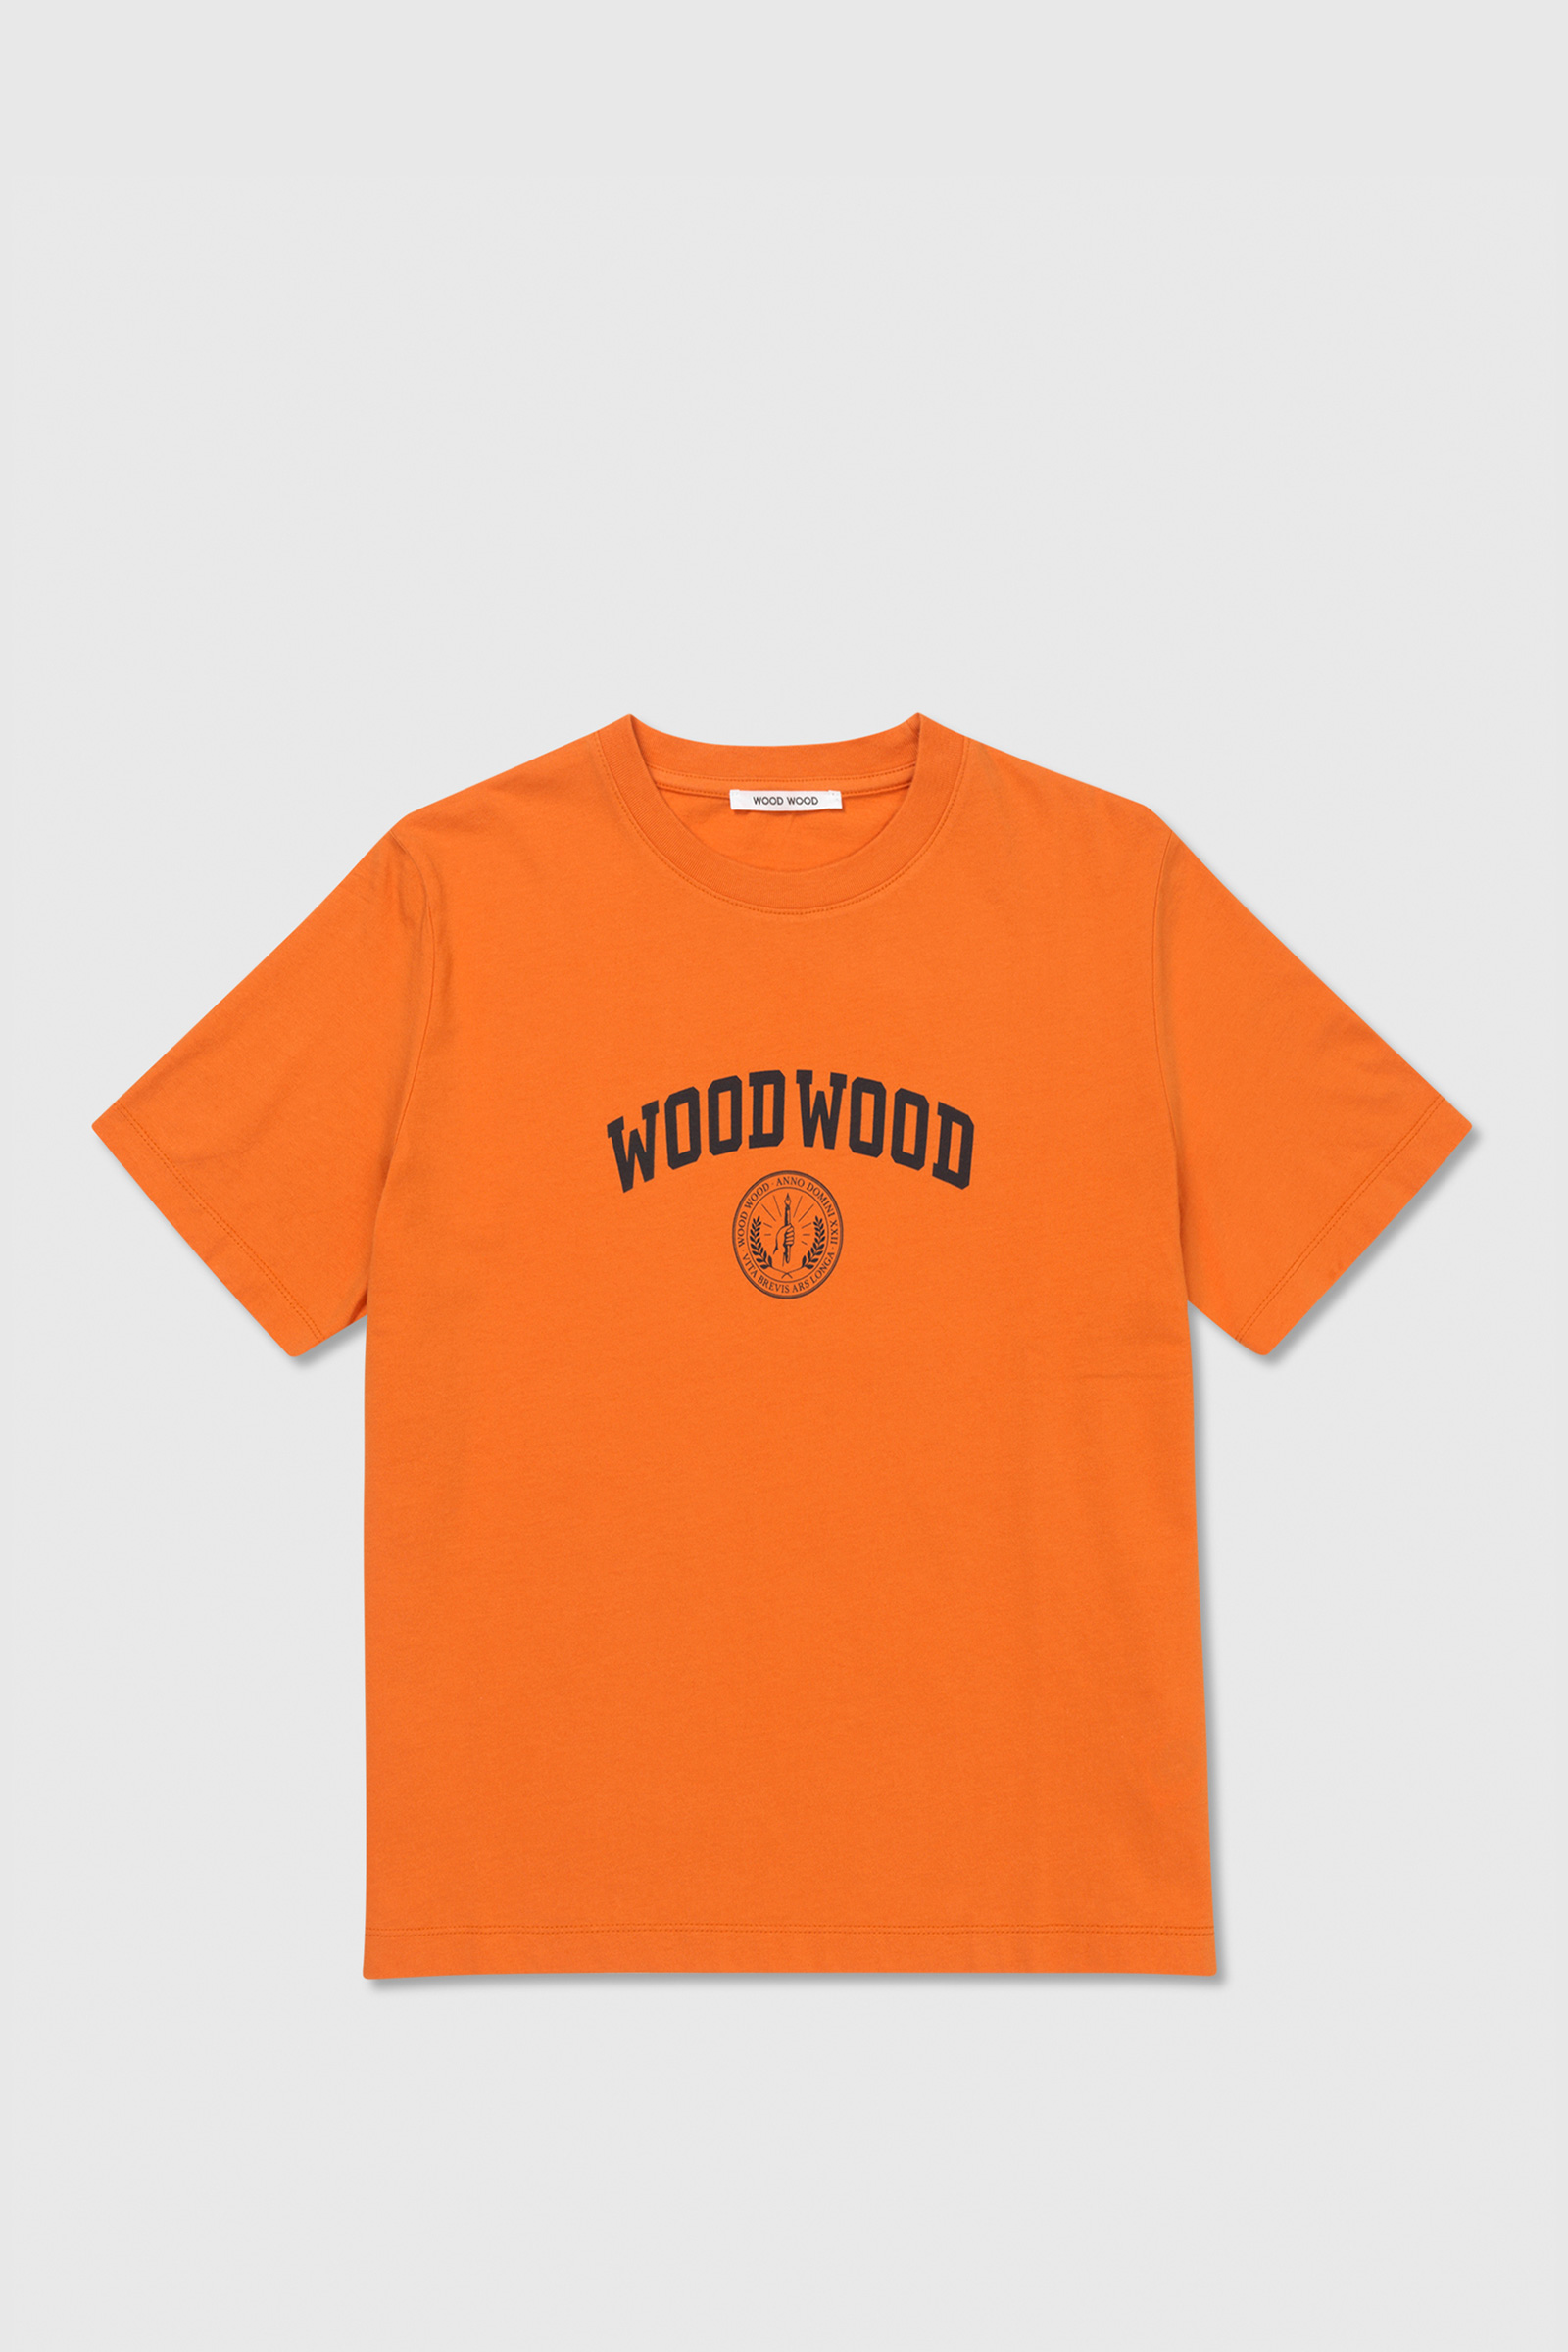 Wood Wood Alma IVY T-shirt Dusty orange | WoodWood.com